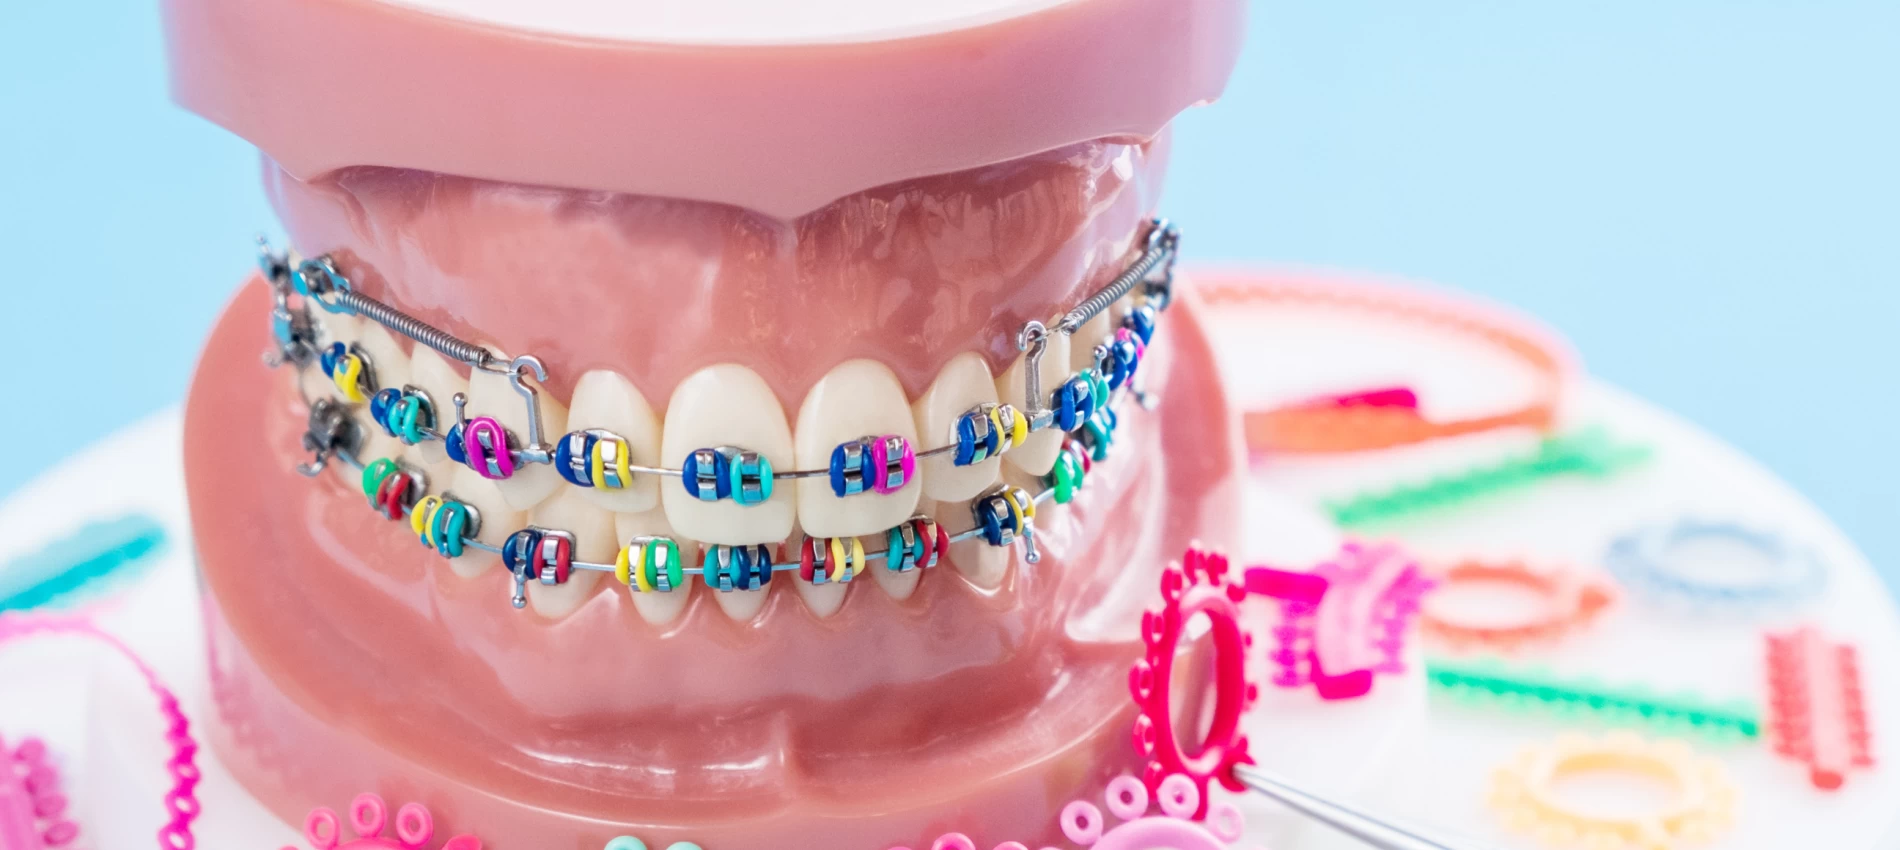 Elasticele aparatului dentar: ce sunt, care este rolul lor și când trebuie înlocuite